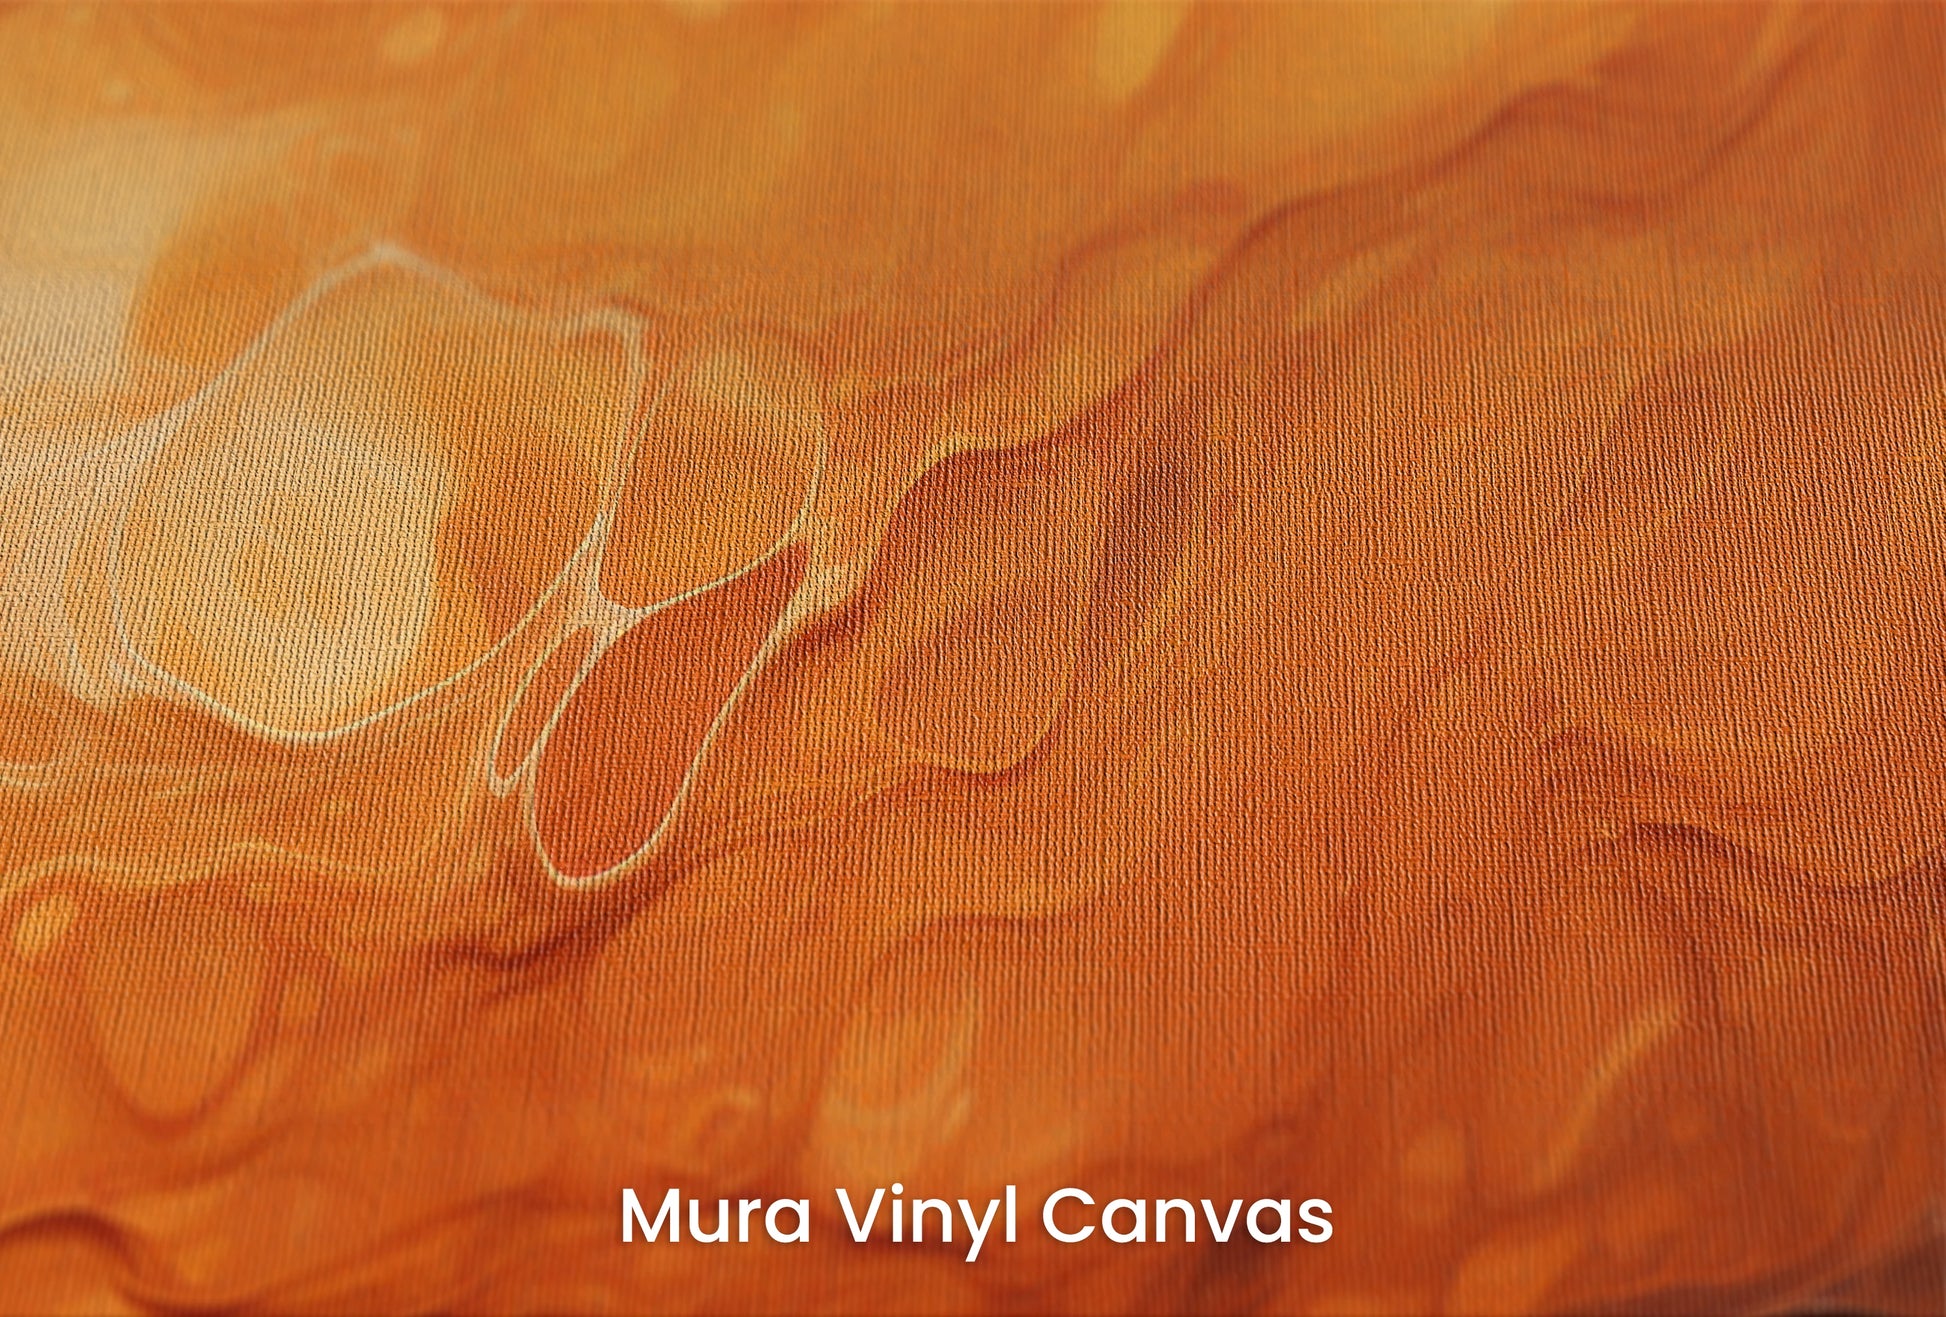 Zbliżenie na artystyczną fototapetę o nazwie Mercurial Craters na podłożu Mura Vinyl Canvas - faktura naturalnego płótna.